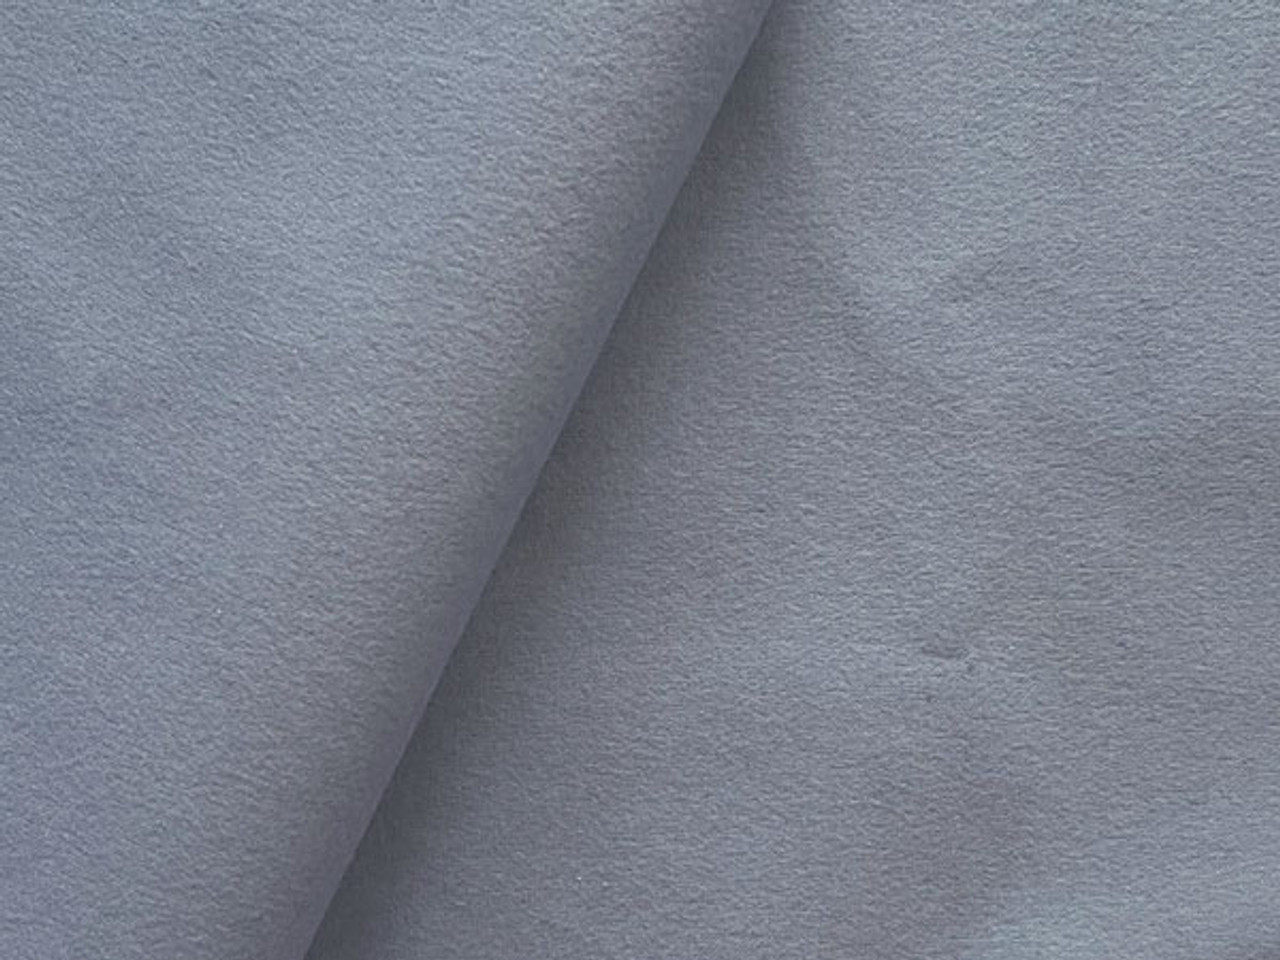 Flannel Greyish Blue - fabric fabric